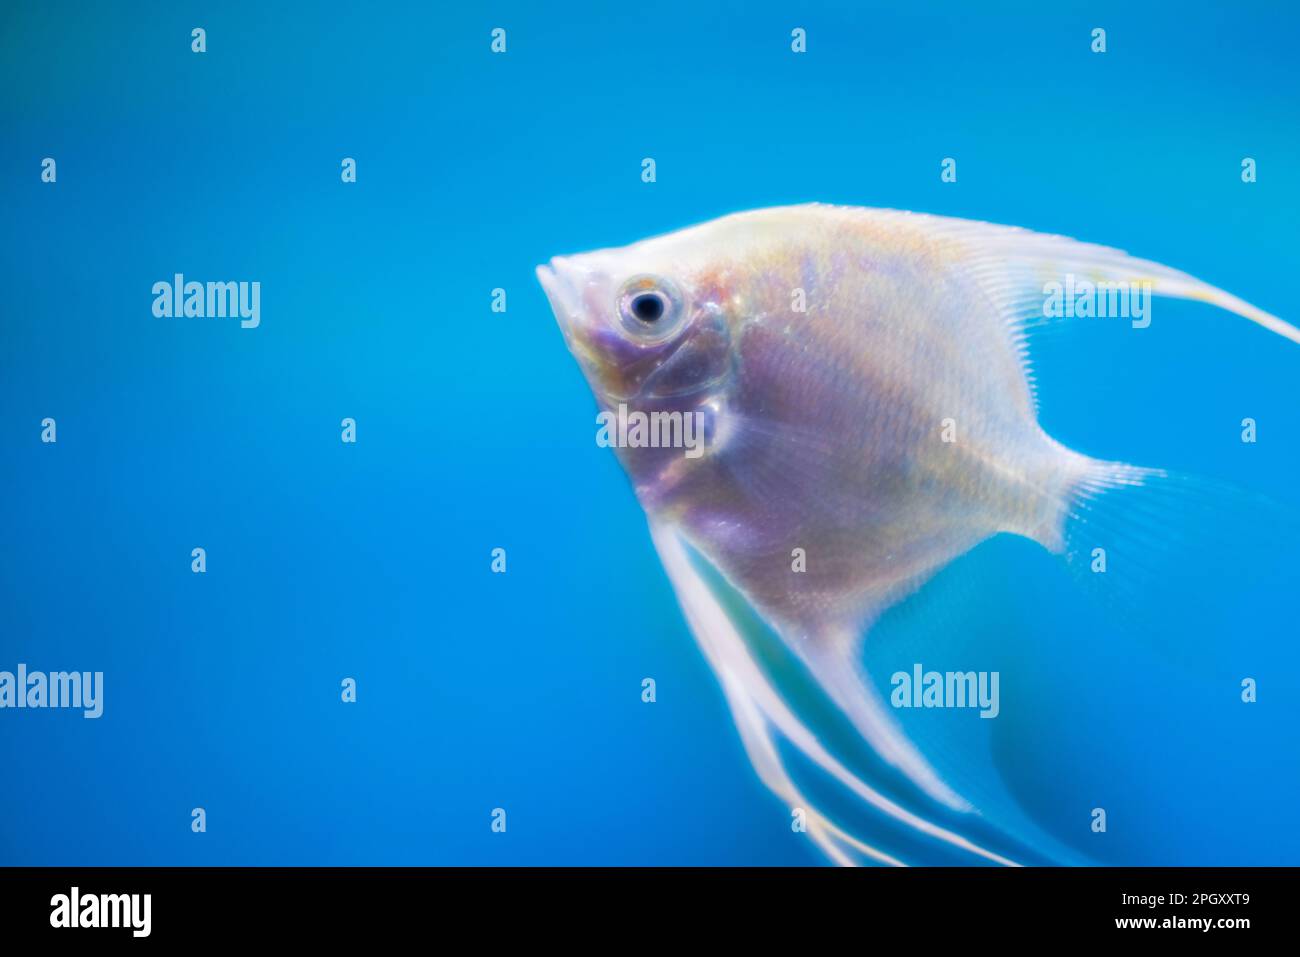 Macro view of home freshwater aquarium with white angelfish. Stock Photo